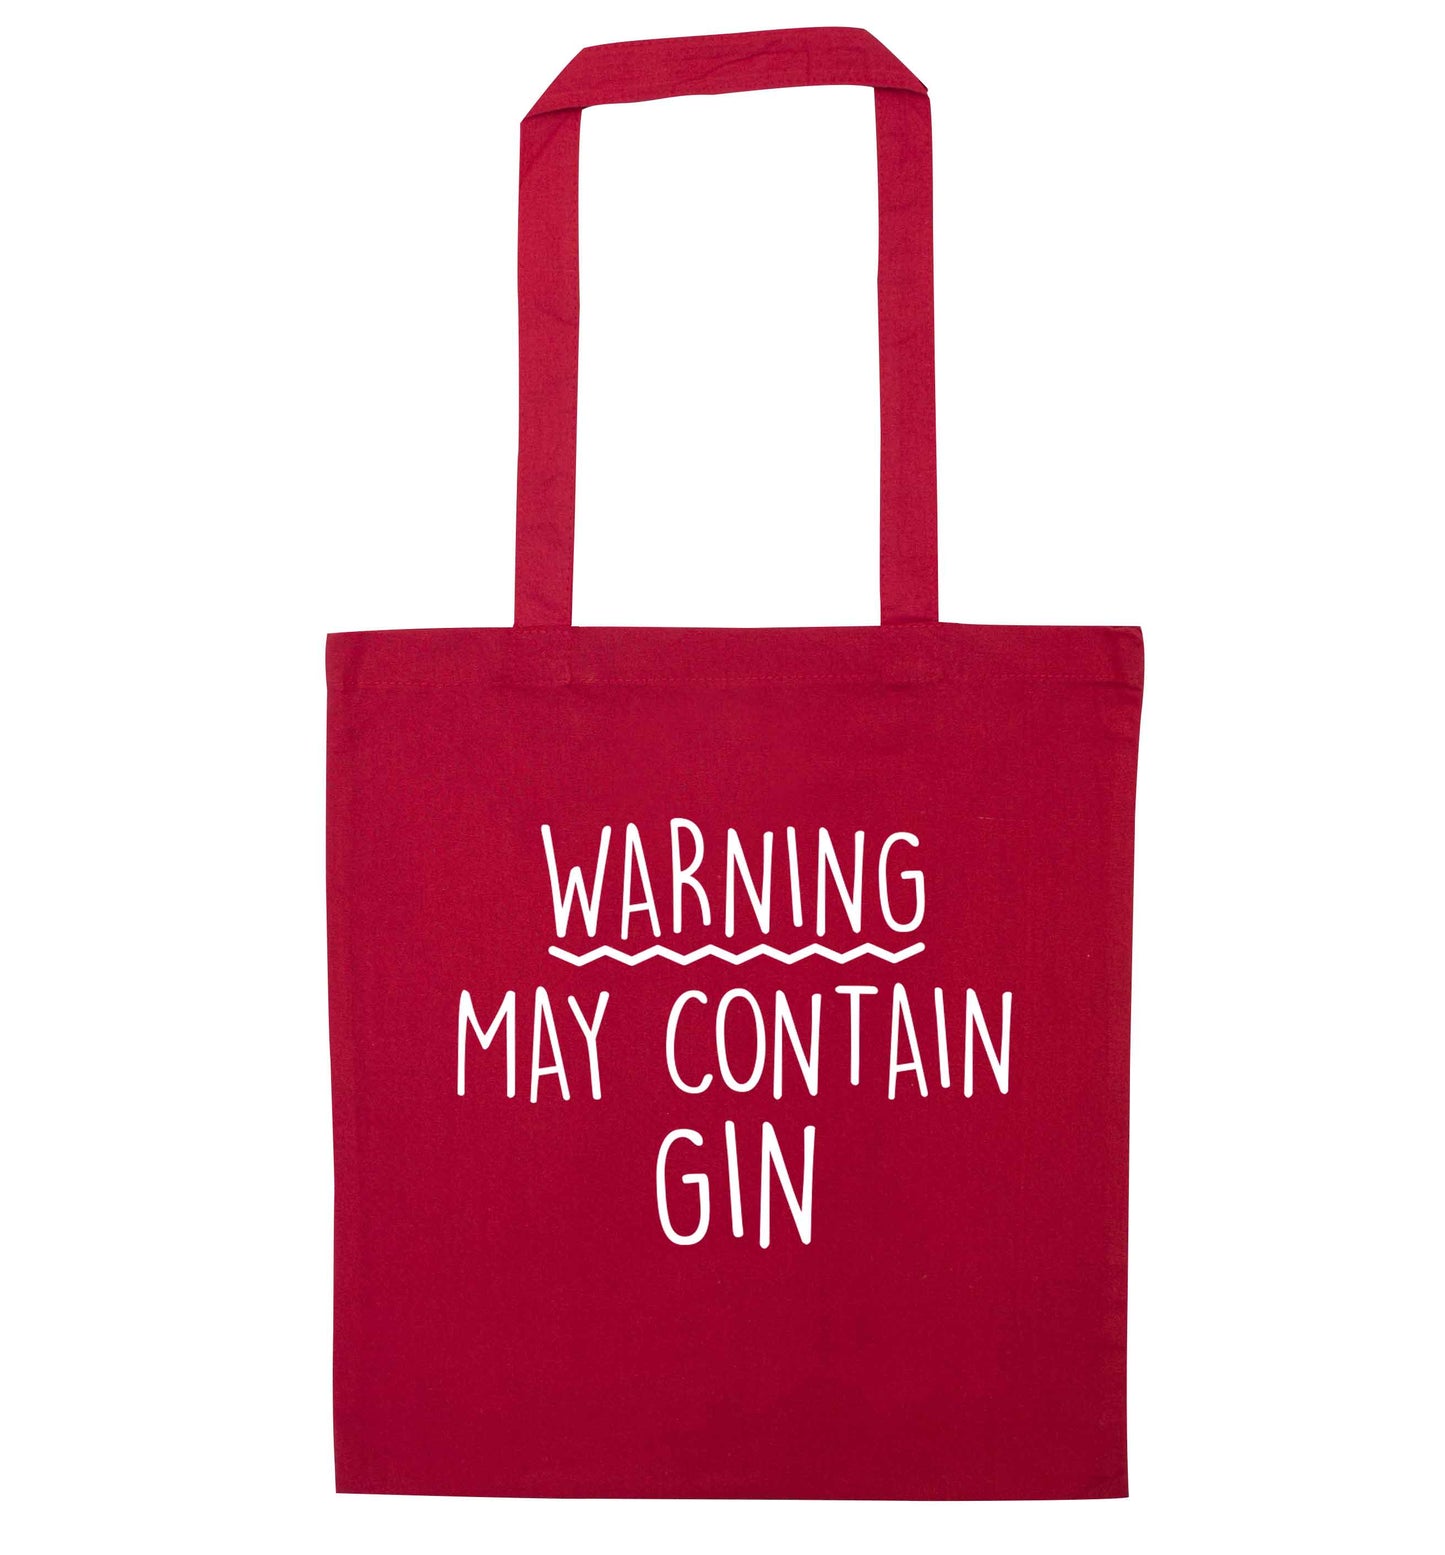 Warning may contain gin red tote bag